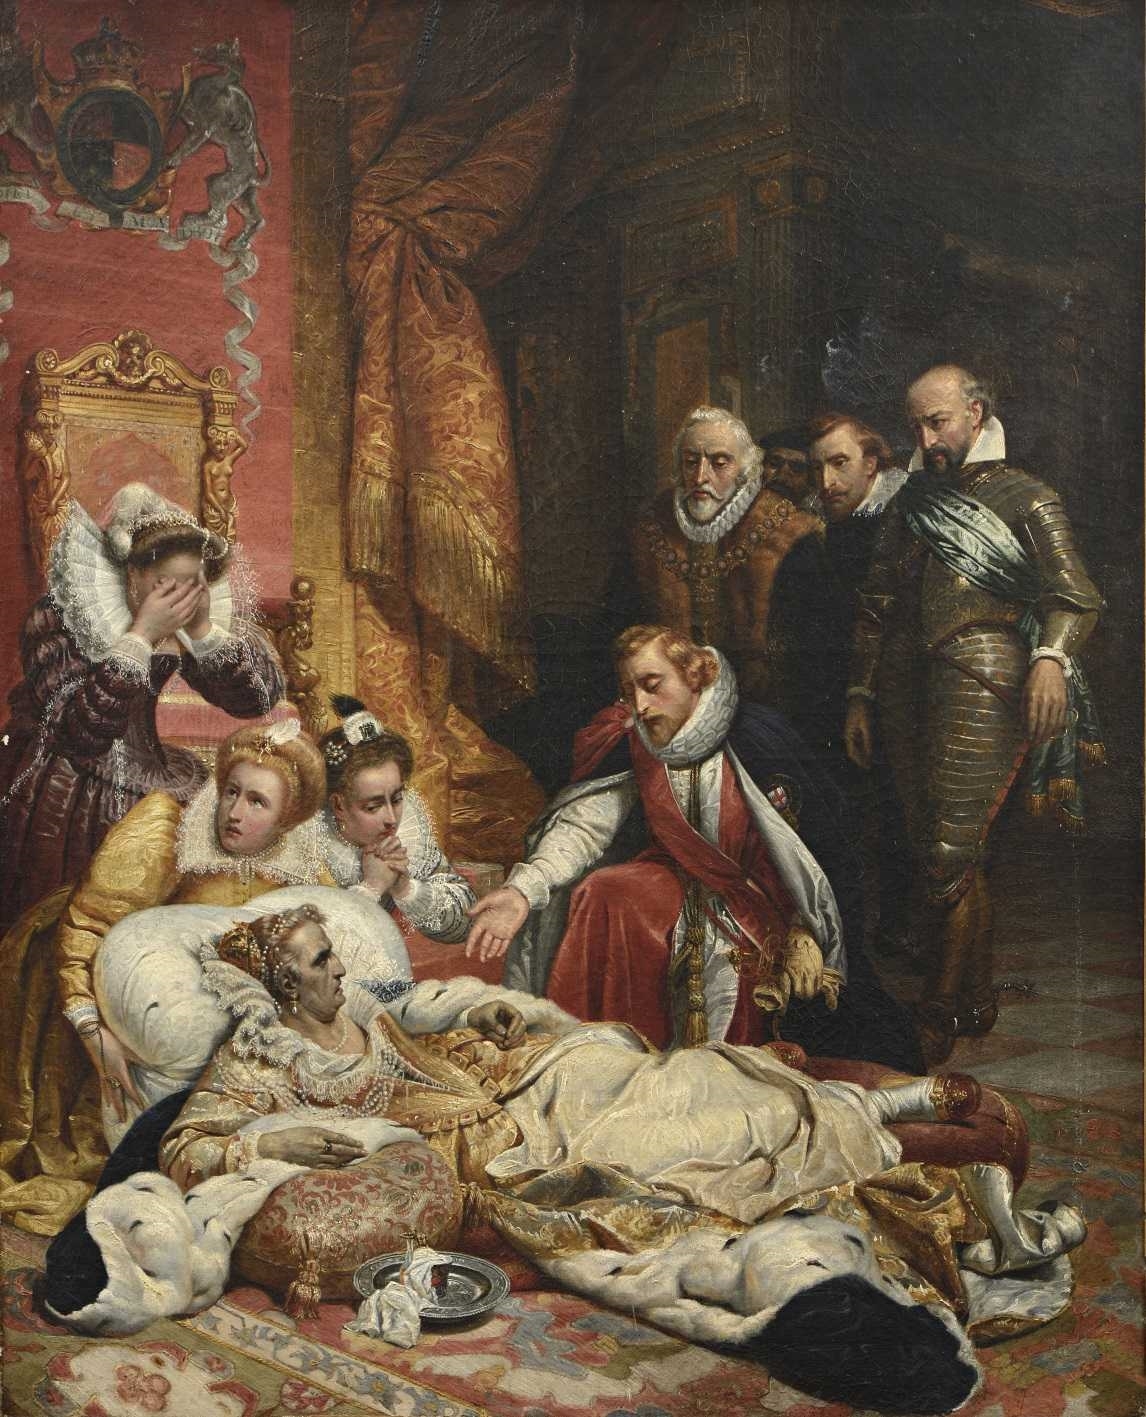 La mort d’Elisabeth, reine d’Angleterre by Paul Delaroche